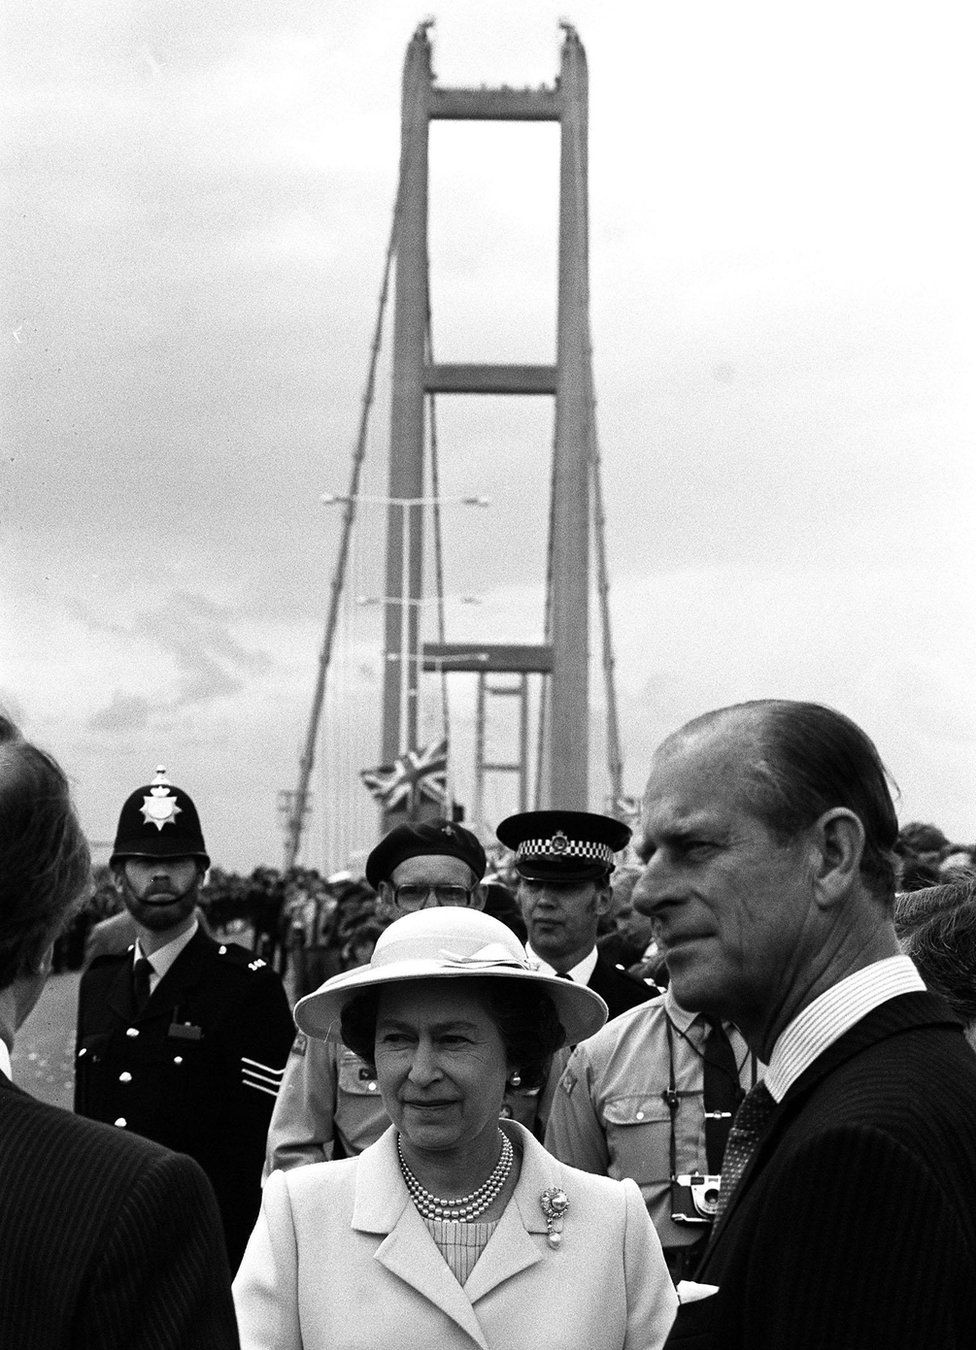 The Queen opens the Humber Bridge